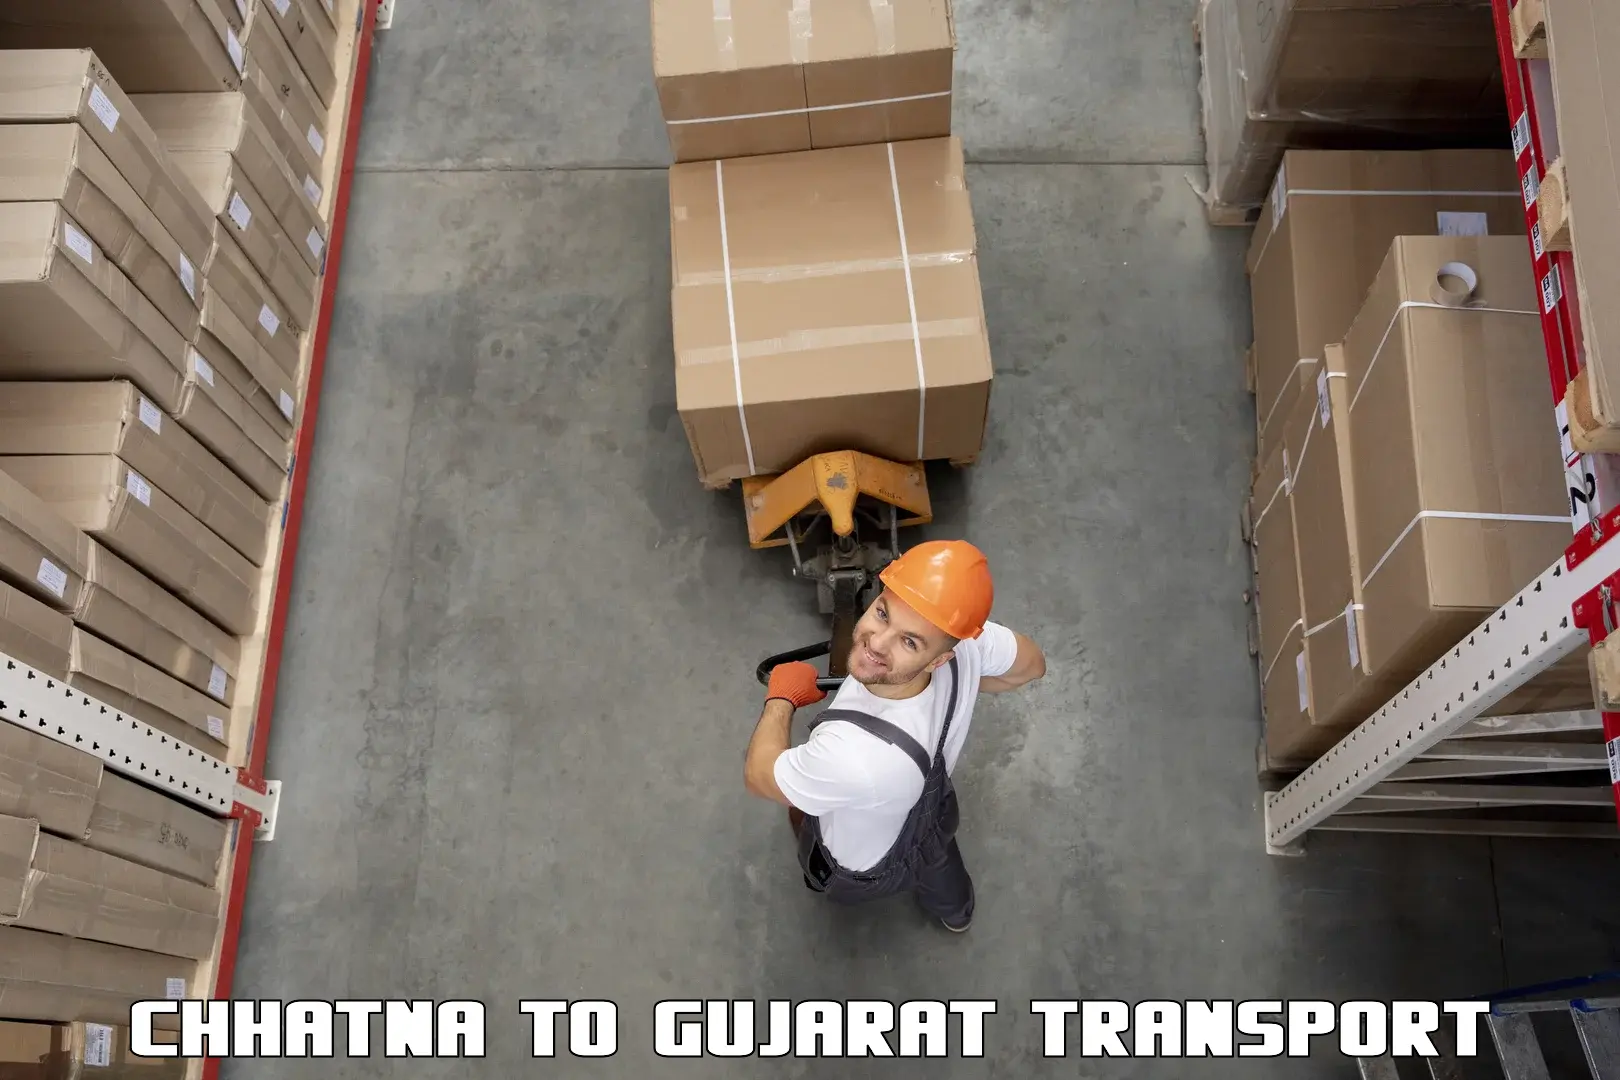 Two wheeler parcel service Chhatna to IIIT Surat